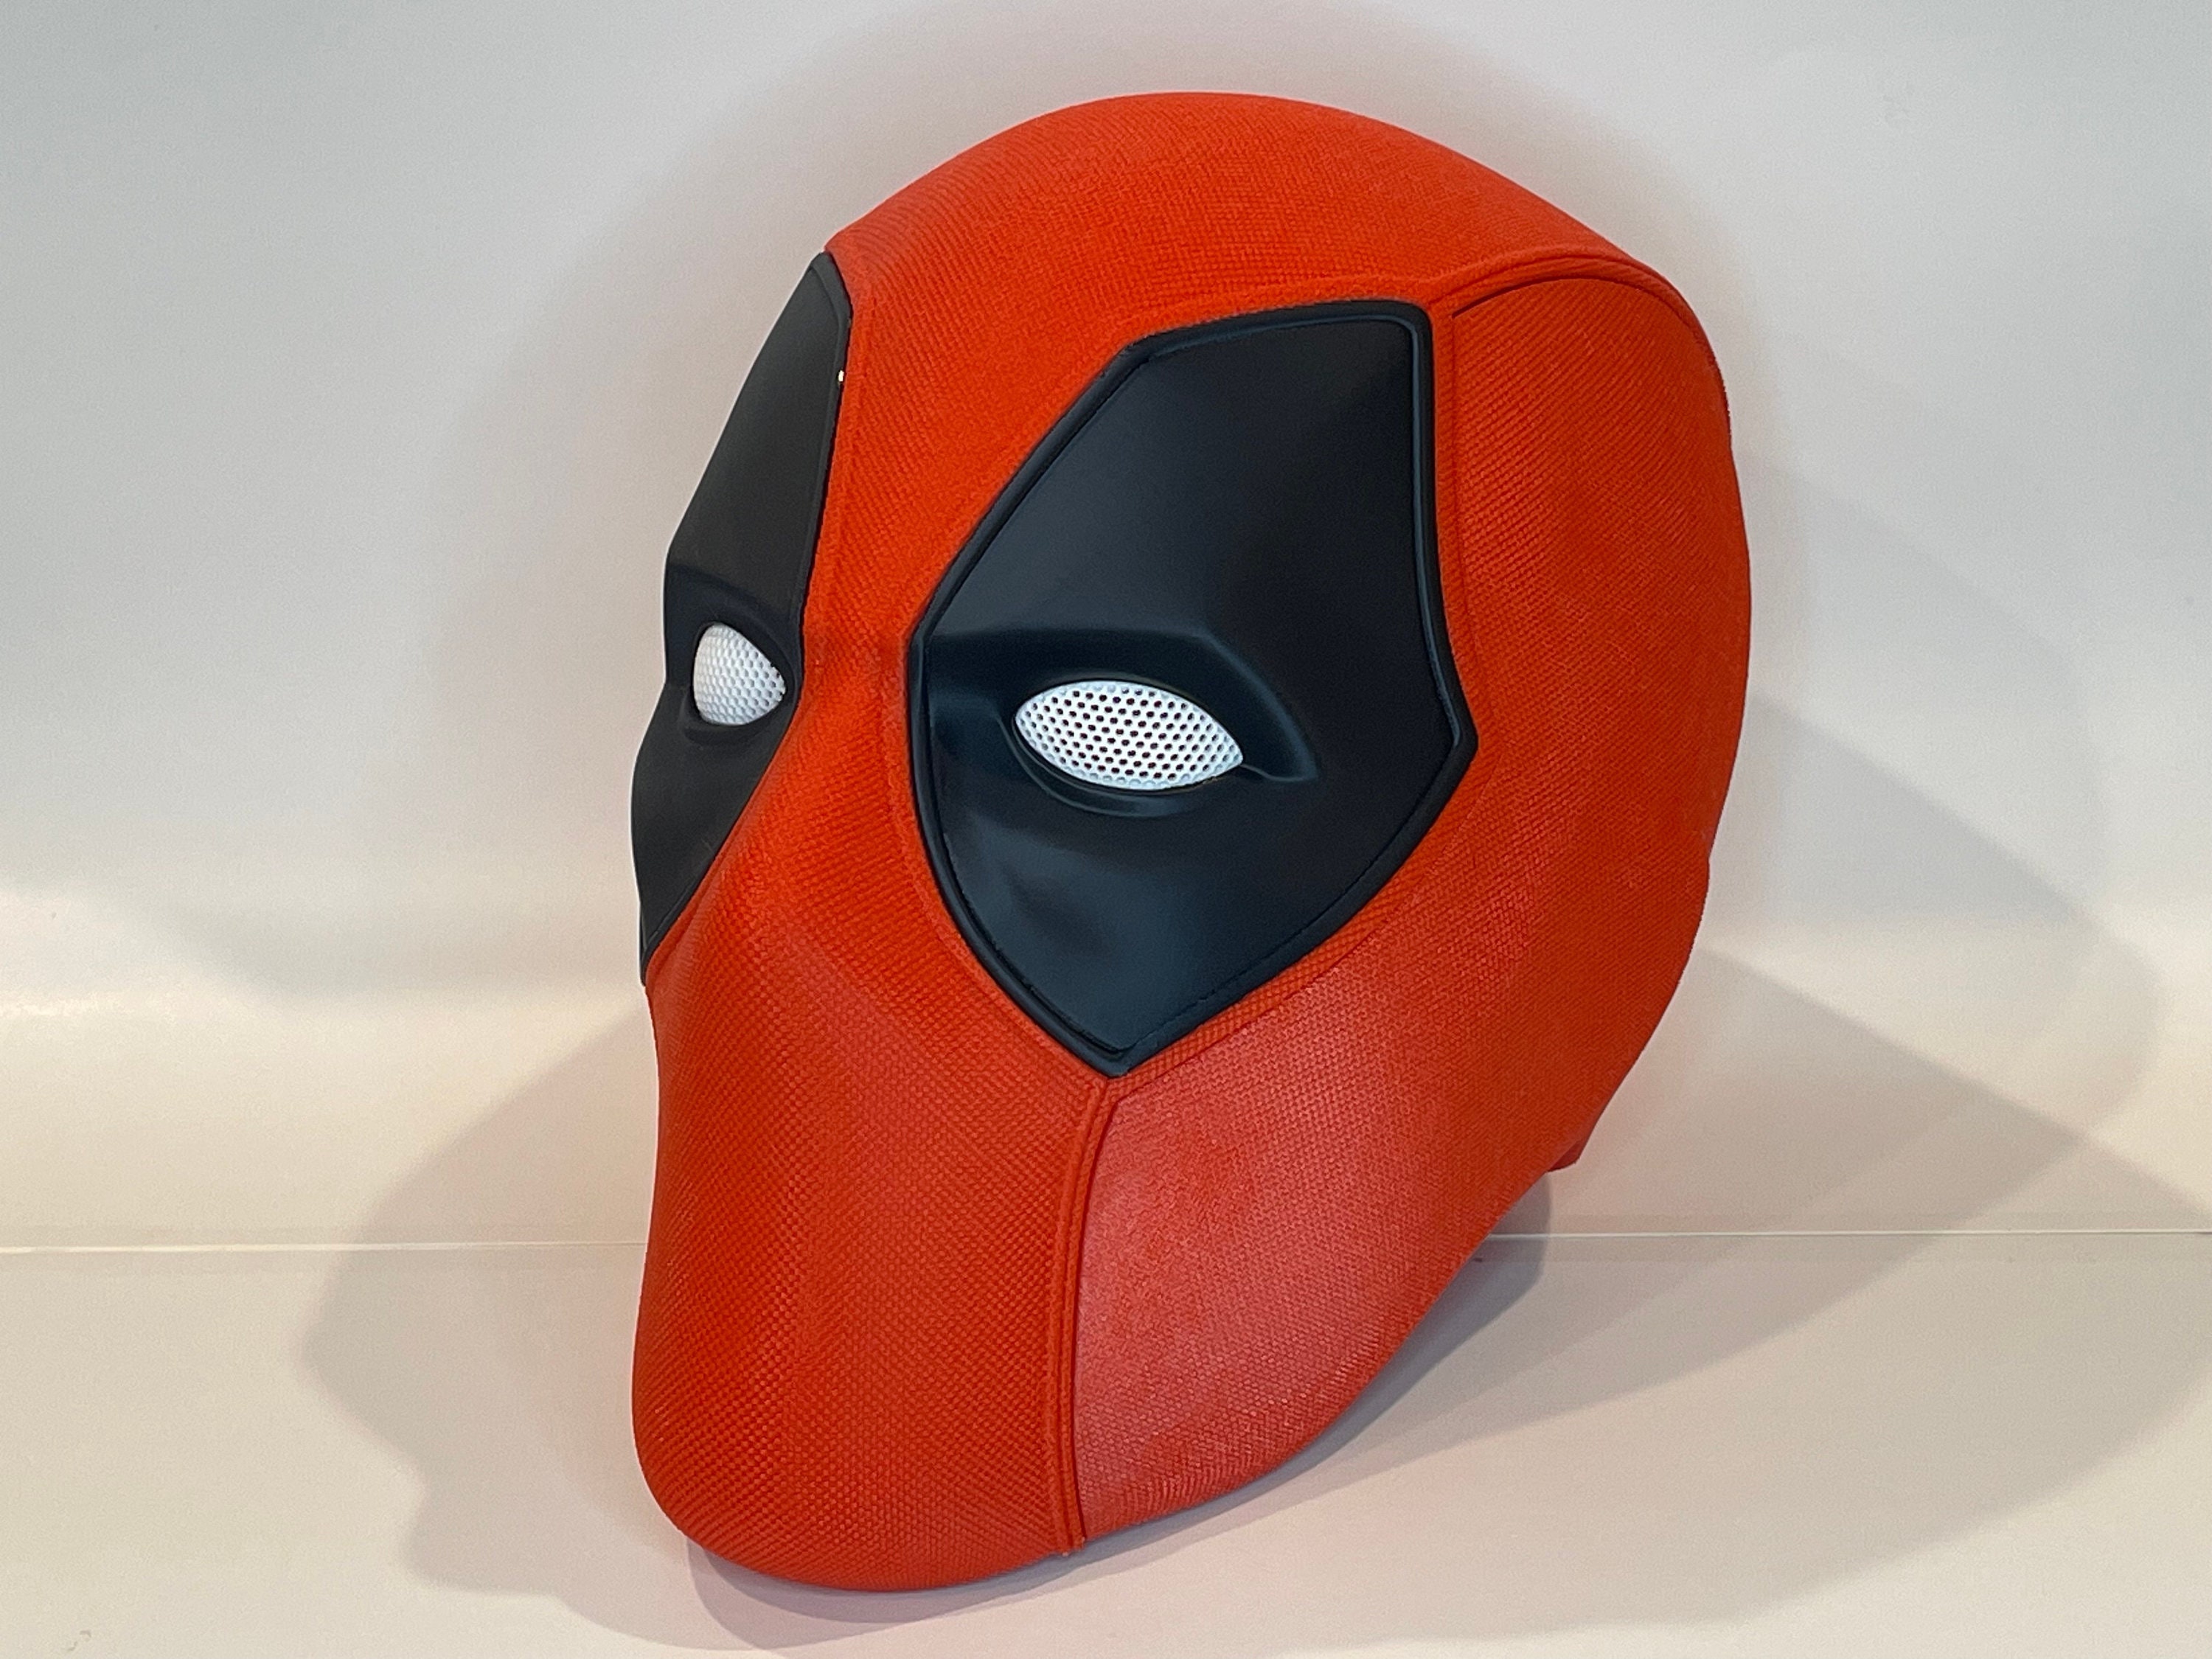 Kaufen Sie 3D-Marvel-Wandlichtpaket – Deadpool-Maske –  Kinderzimmer-Nachtlicht – MCU Marvel Avengers zu Großhandelspreisen